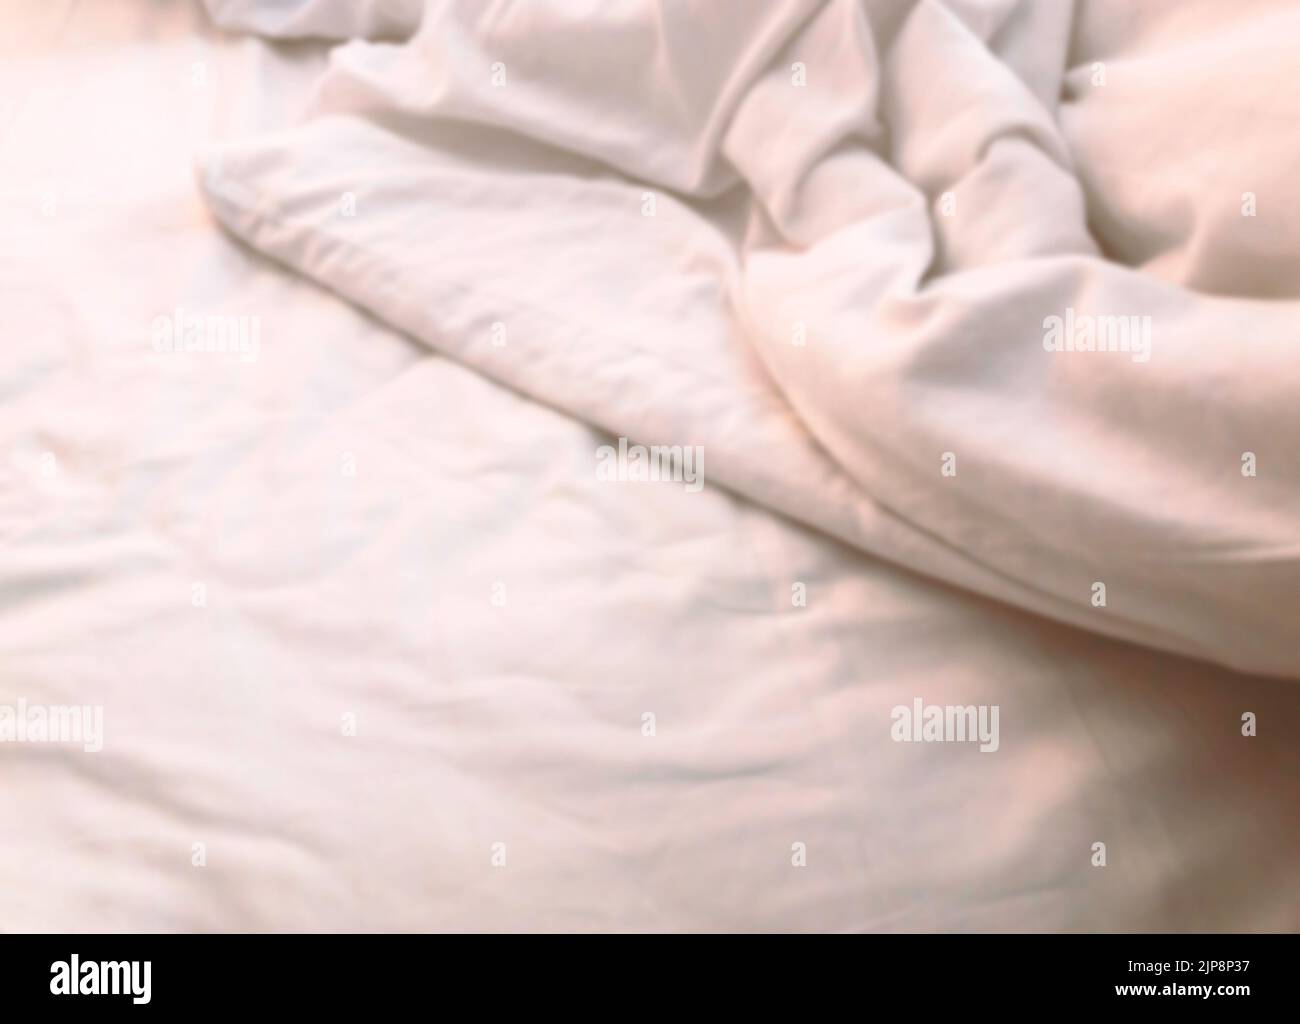 Verschwommenes Bild ein Teil des weißen Bettes mit Decke, Nahaufnahme des leeren Raumes auf dem weißen Bett, Falten auf dem Bett, warmes Licht. Stockfoto